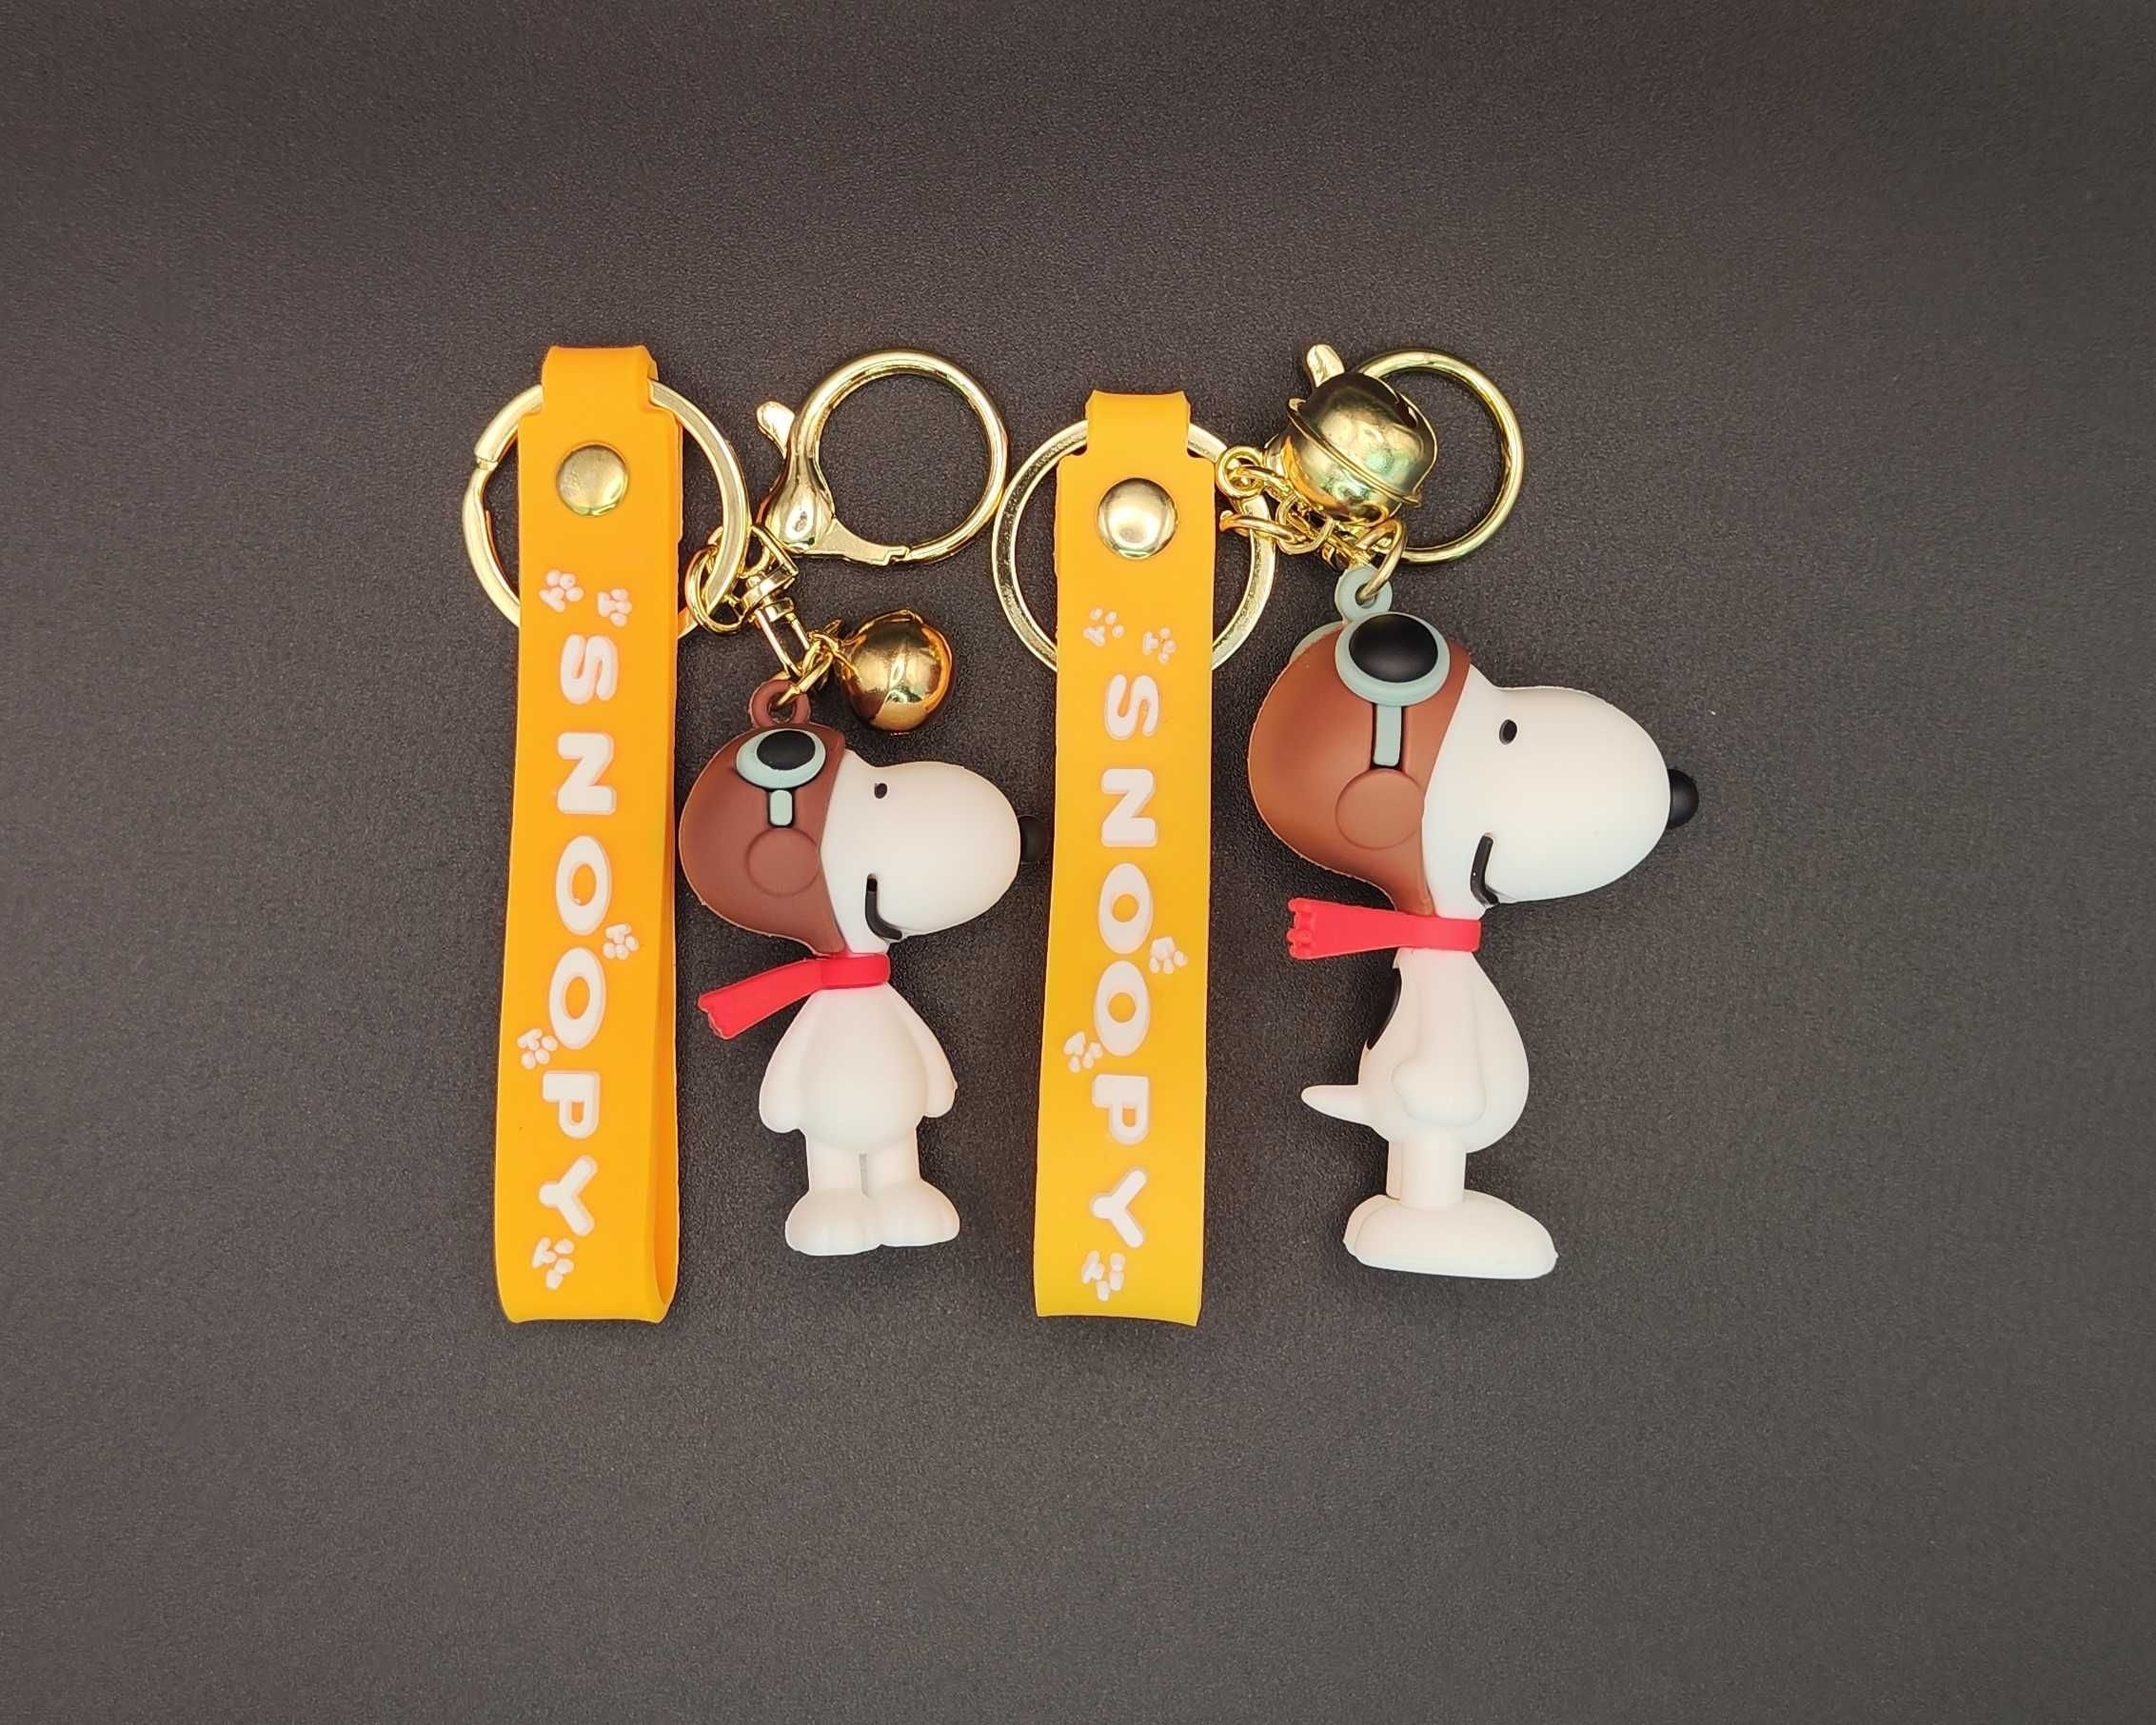 Porta Chaves do Snoopy e Charlie Brown